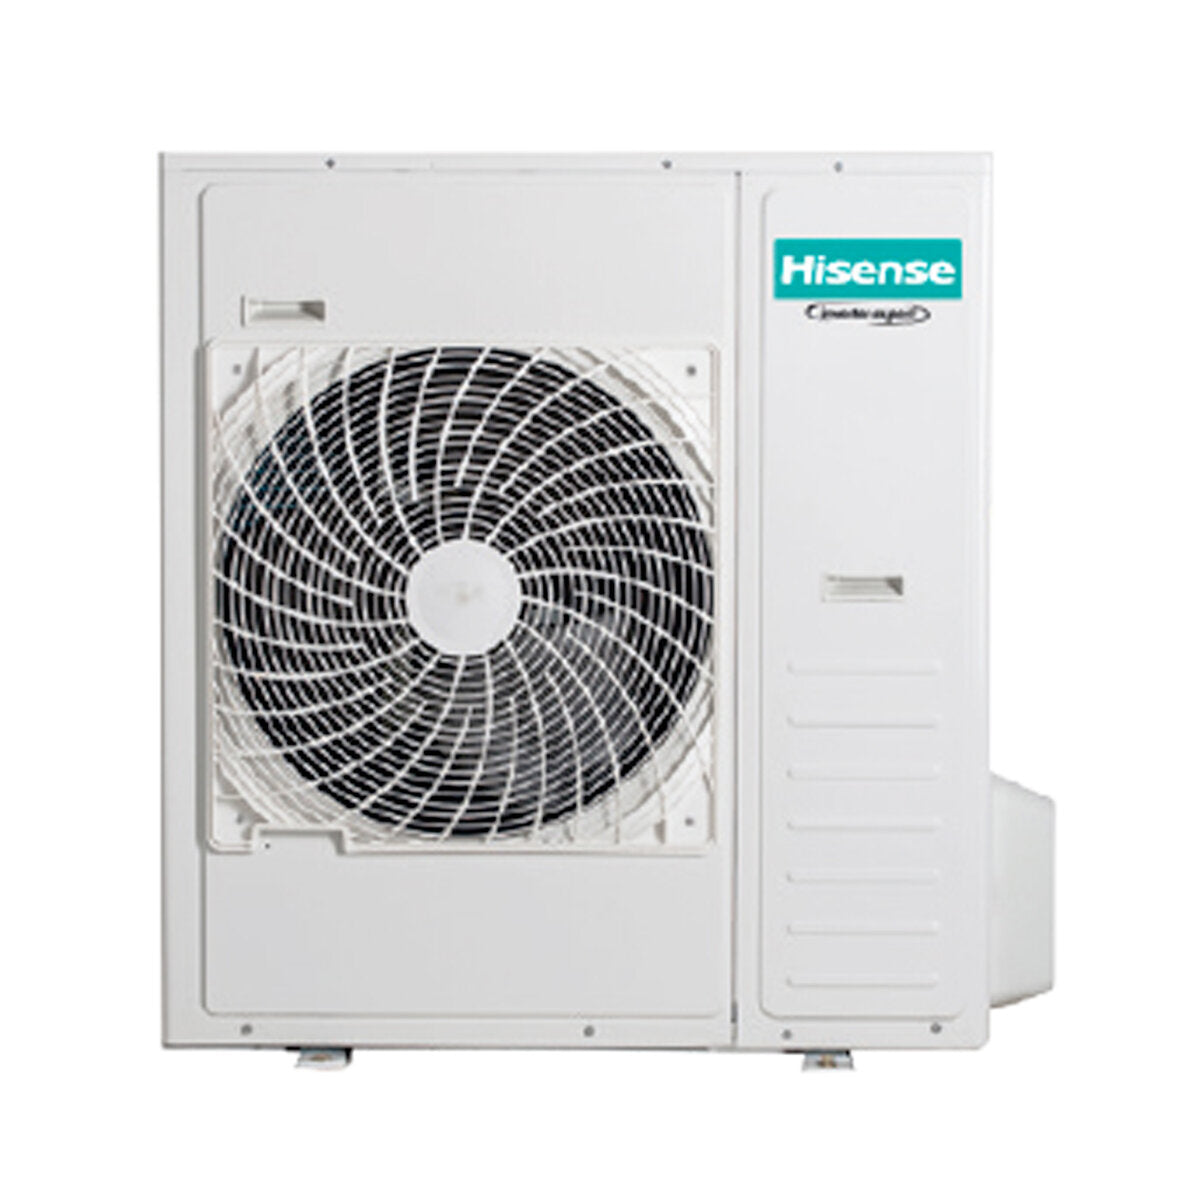 Hisense Hi-Comfort penta split air conditioner 9000 + 9000 + 12000 + 12000 + 12000 BTU wifi inverter outdoor unit 12.5 kW